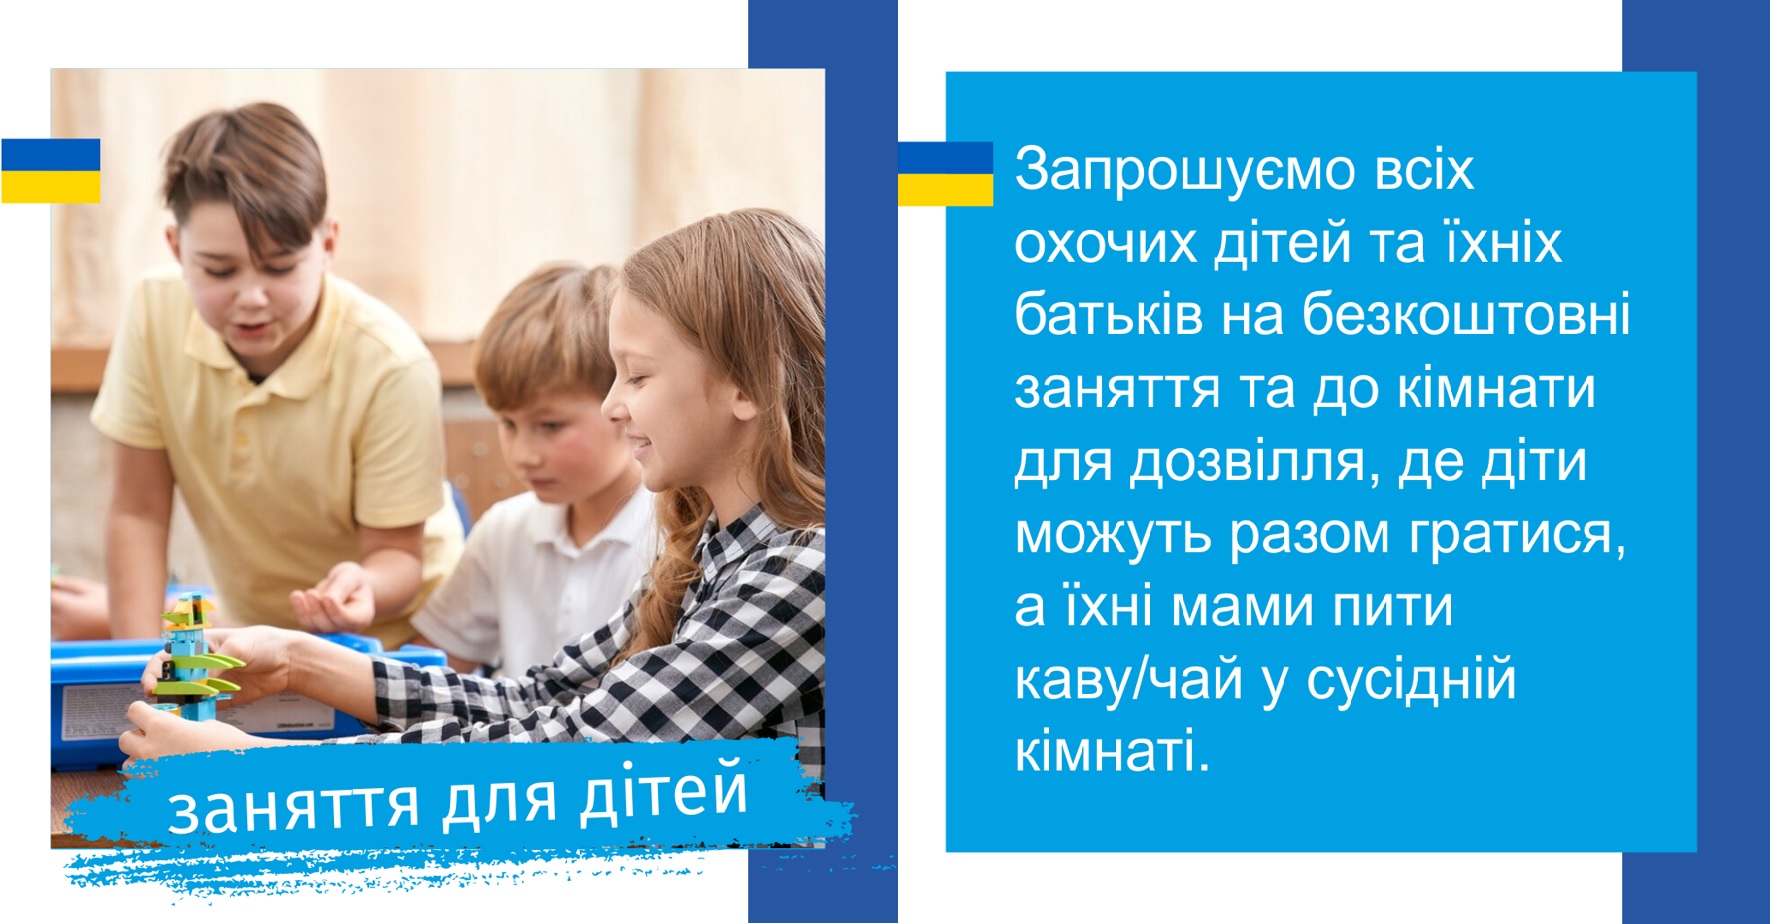 Lezioni gratuite per famiglie ucraine al WSG